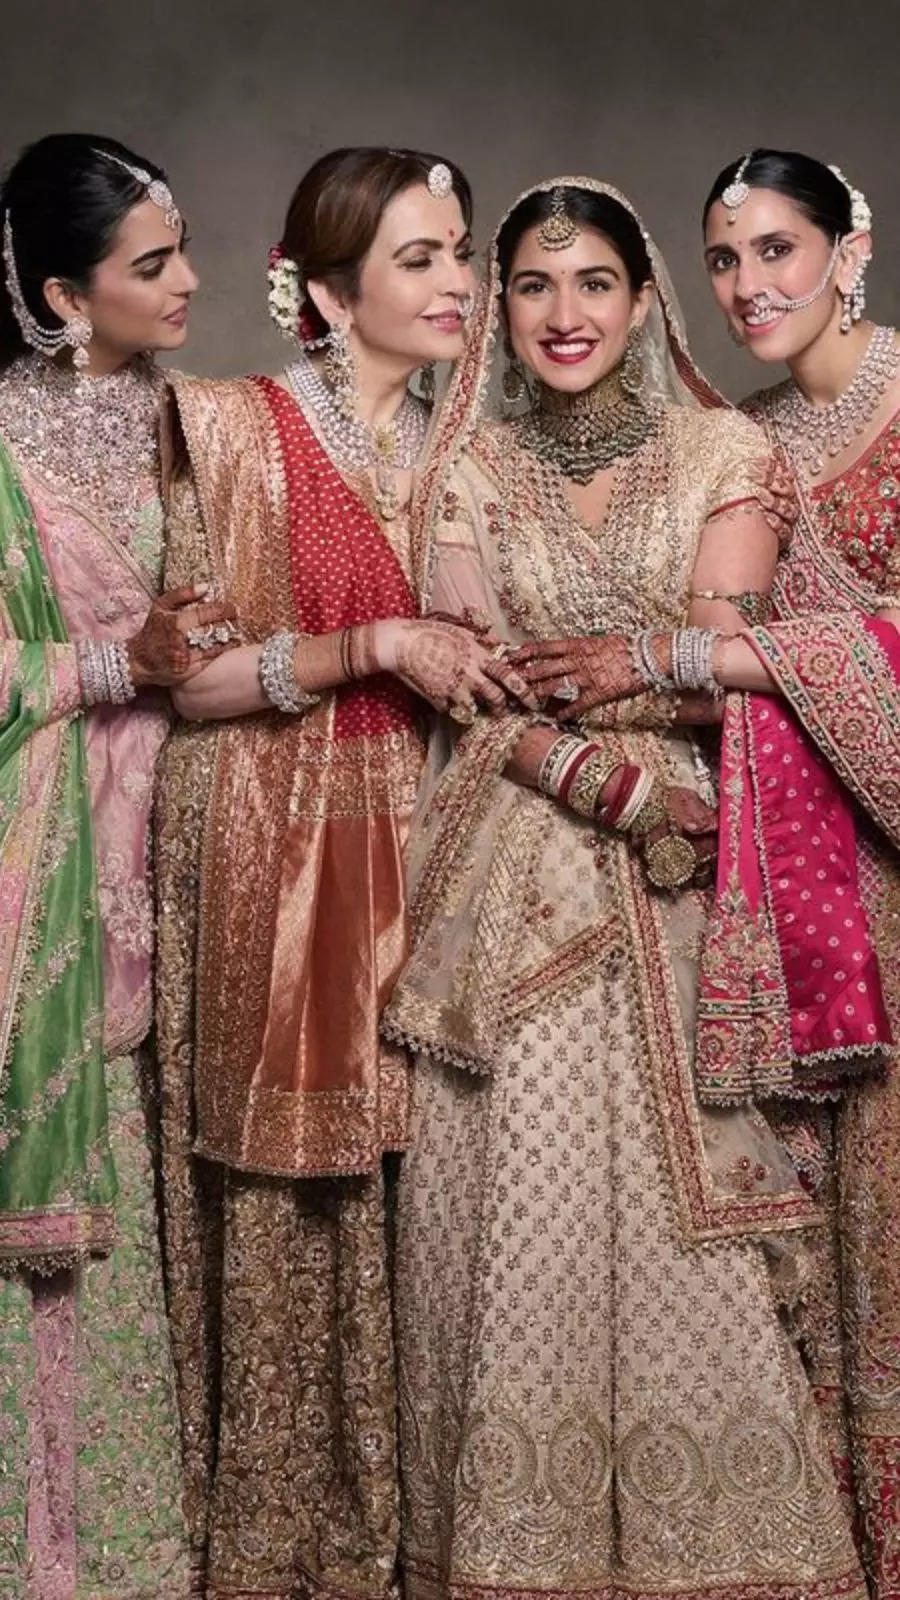 8 most spectacular looks of Ambani women at Anant-Radhika wedding 